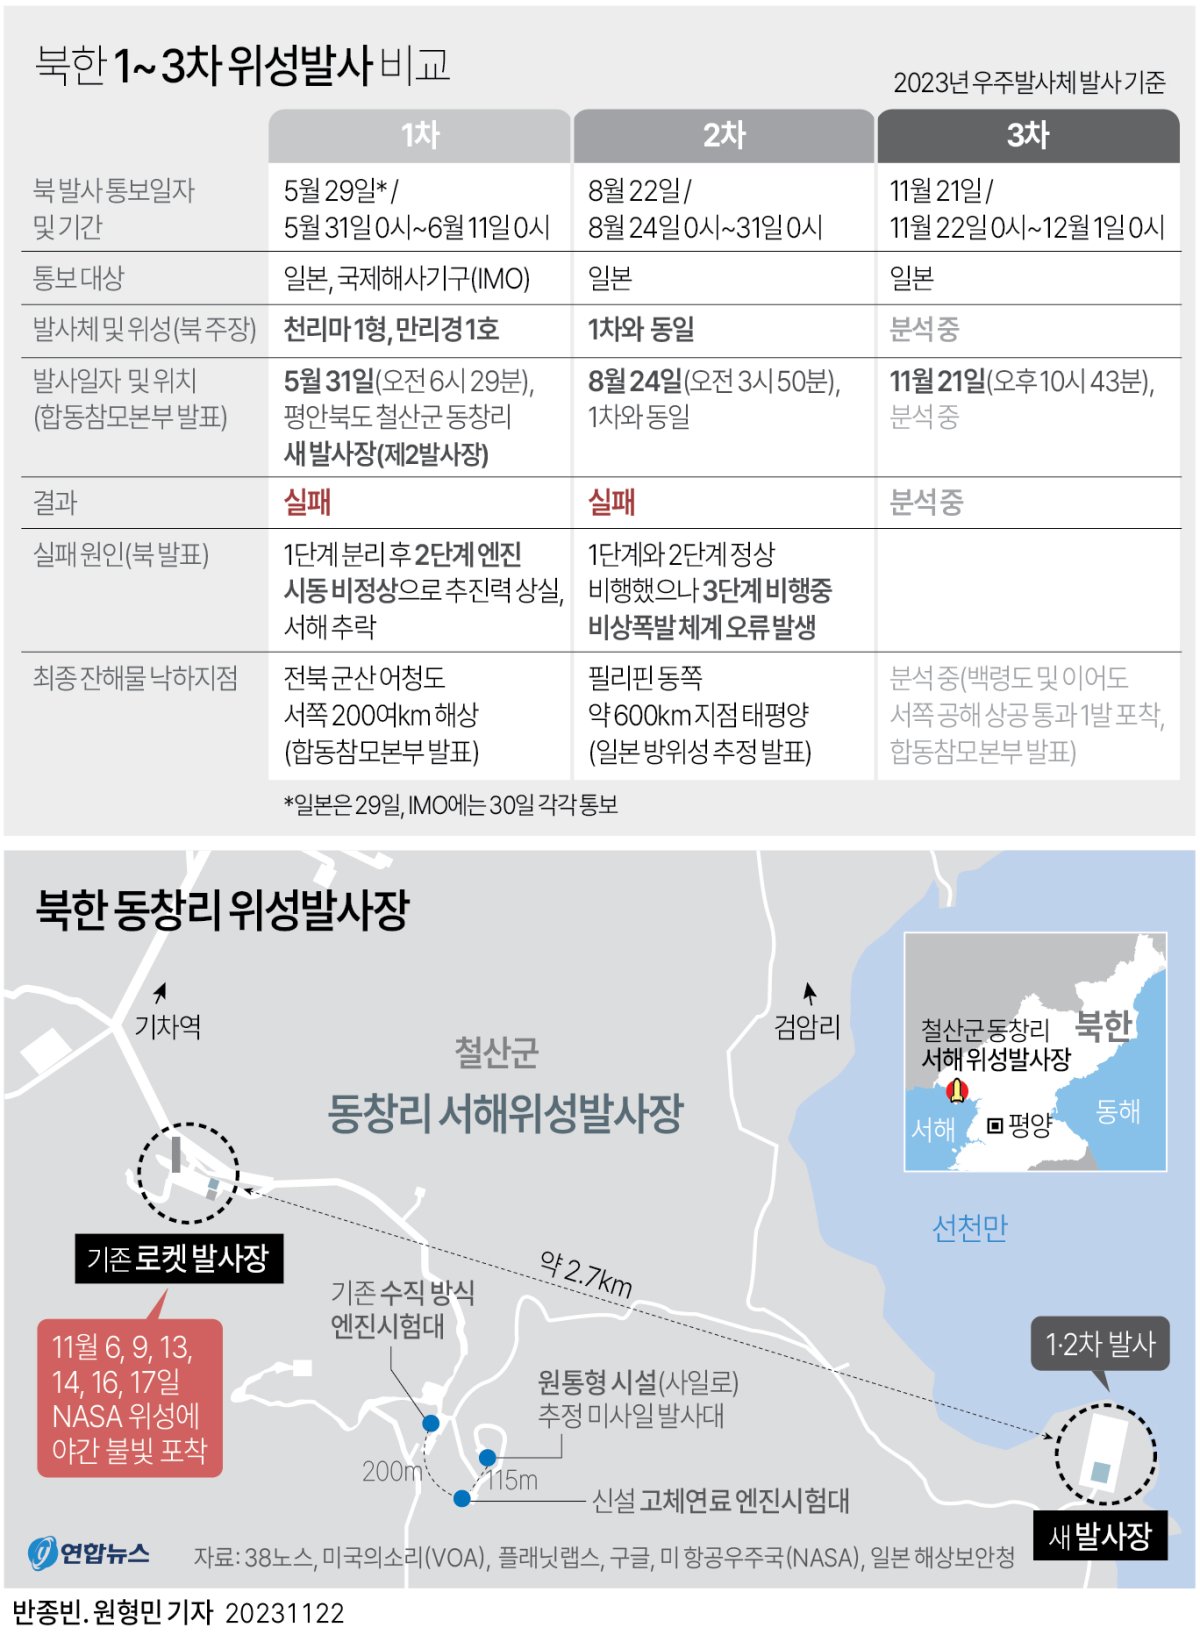 [그래픽] 북한 1~3차 위성발사 비교